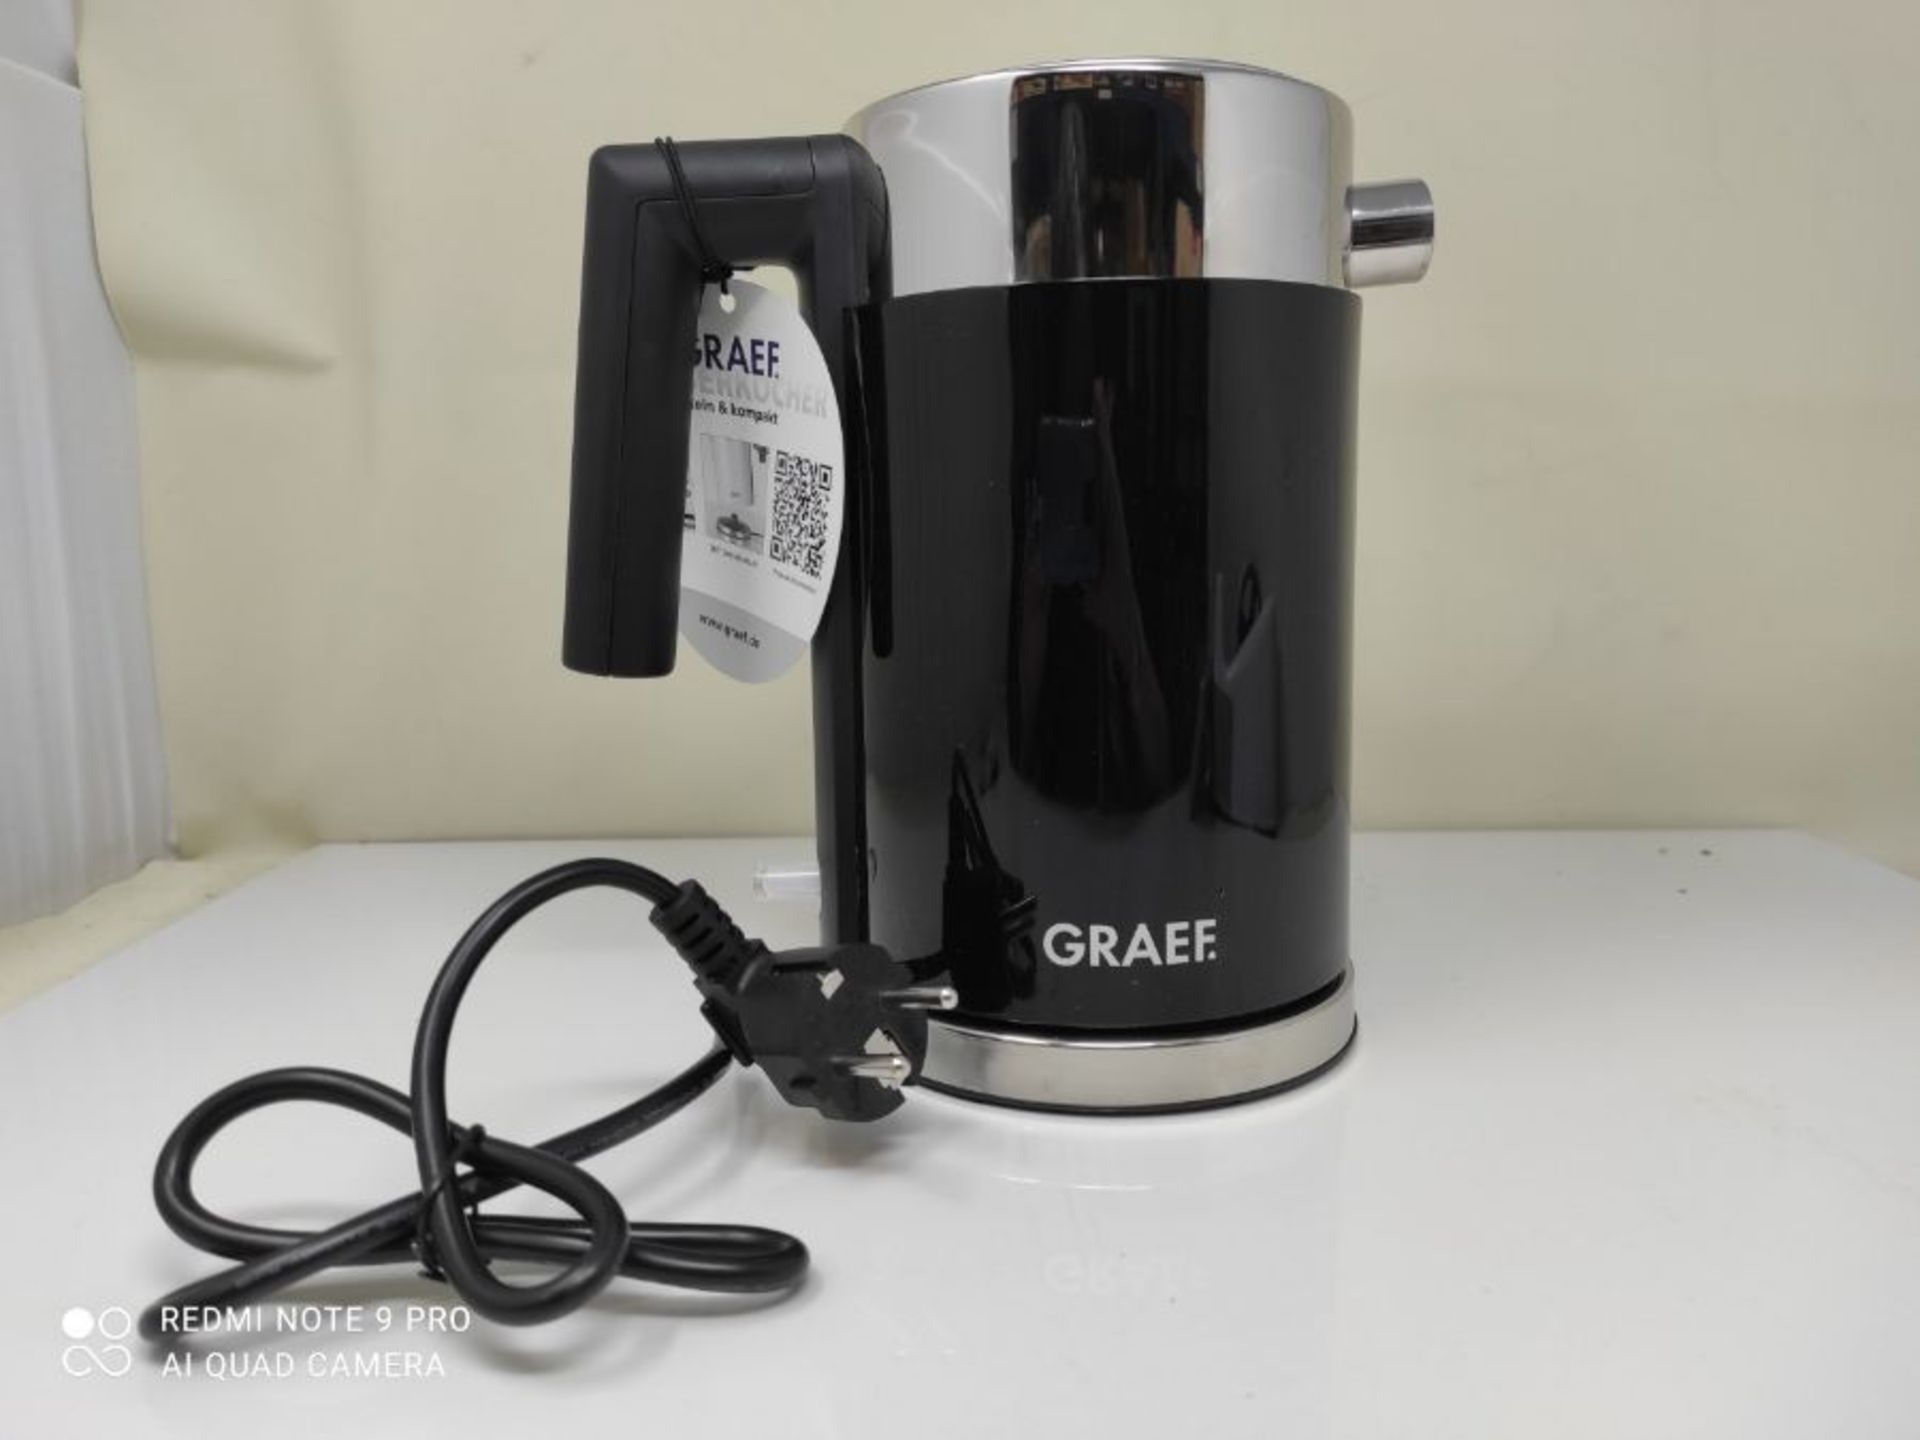 GRAEF WK 402 kettle 1l black - Image 3 of 3